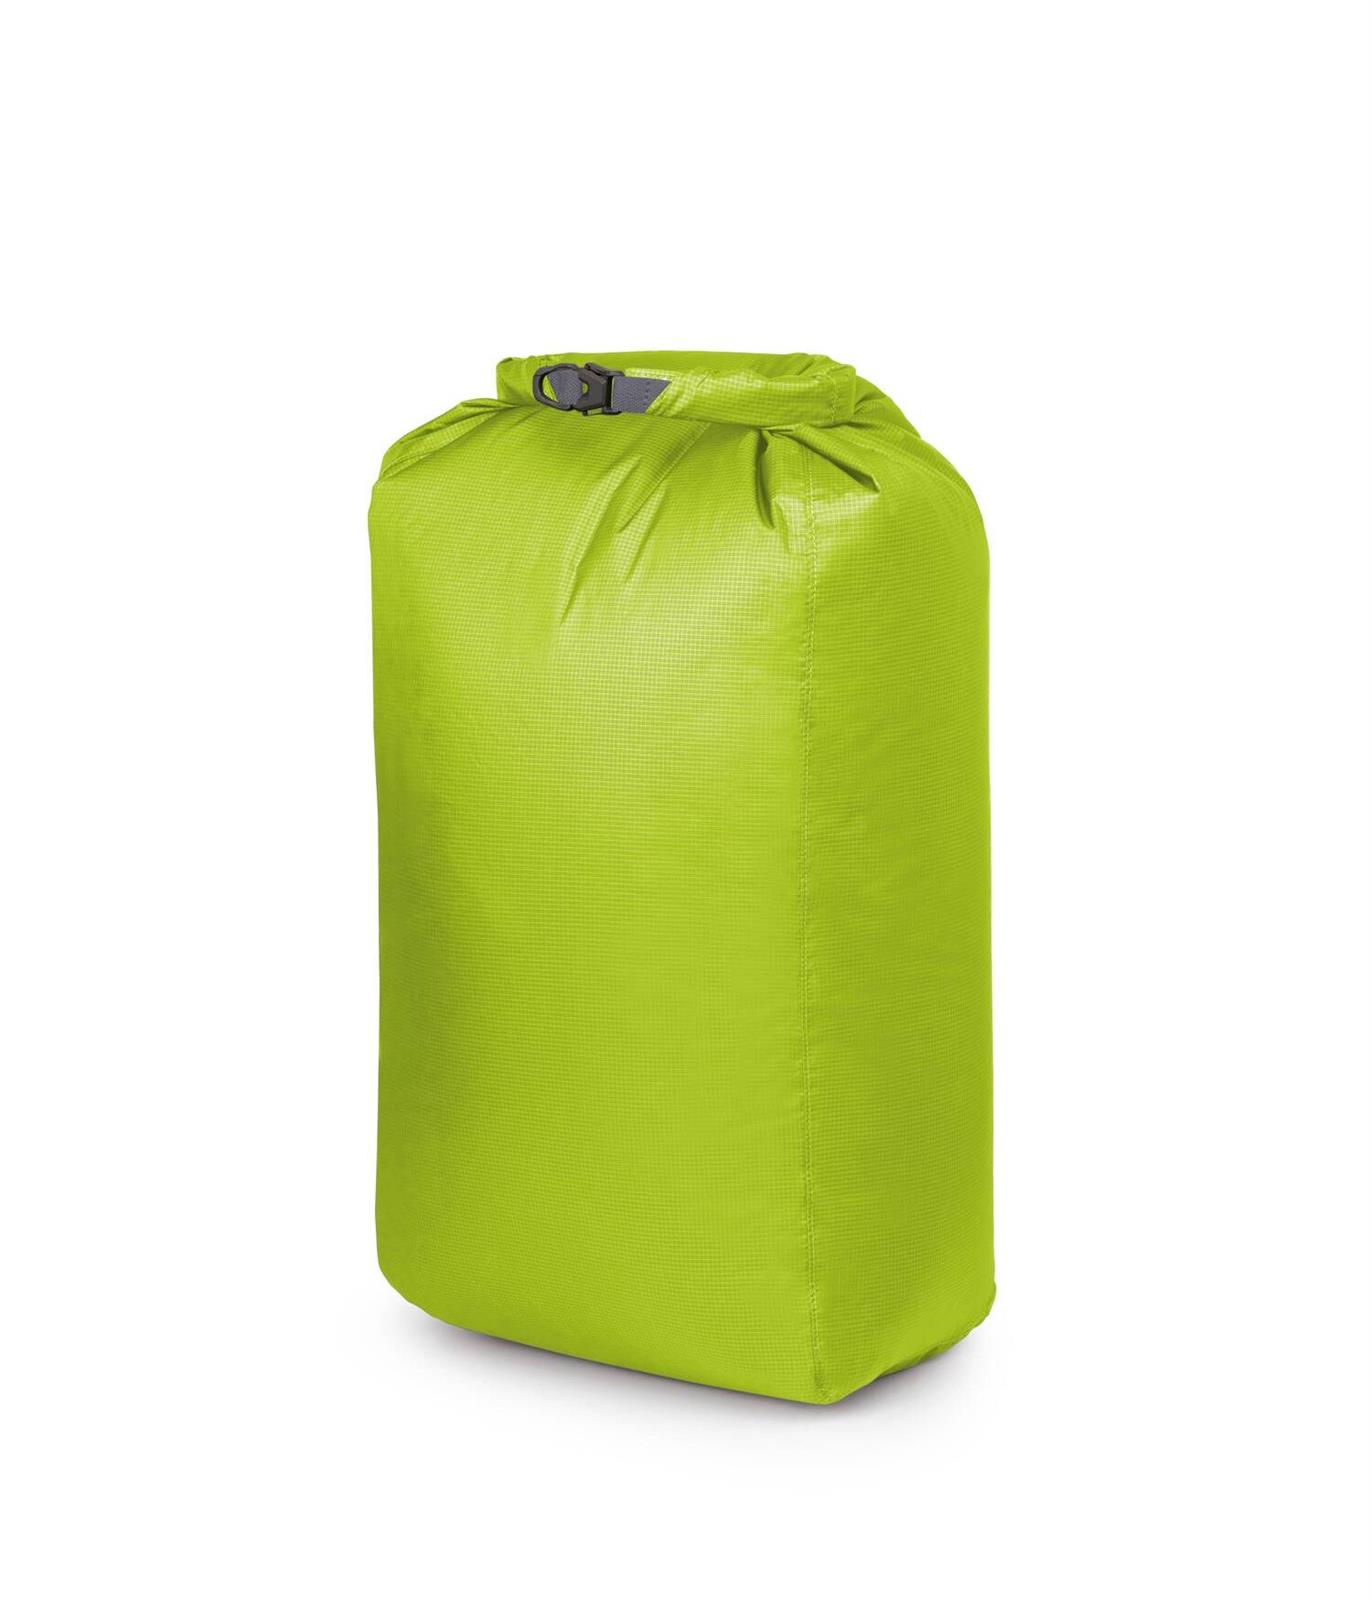 OSPREY Ultralight Dry Sack 35 Limon Green (10004932)